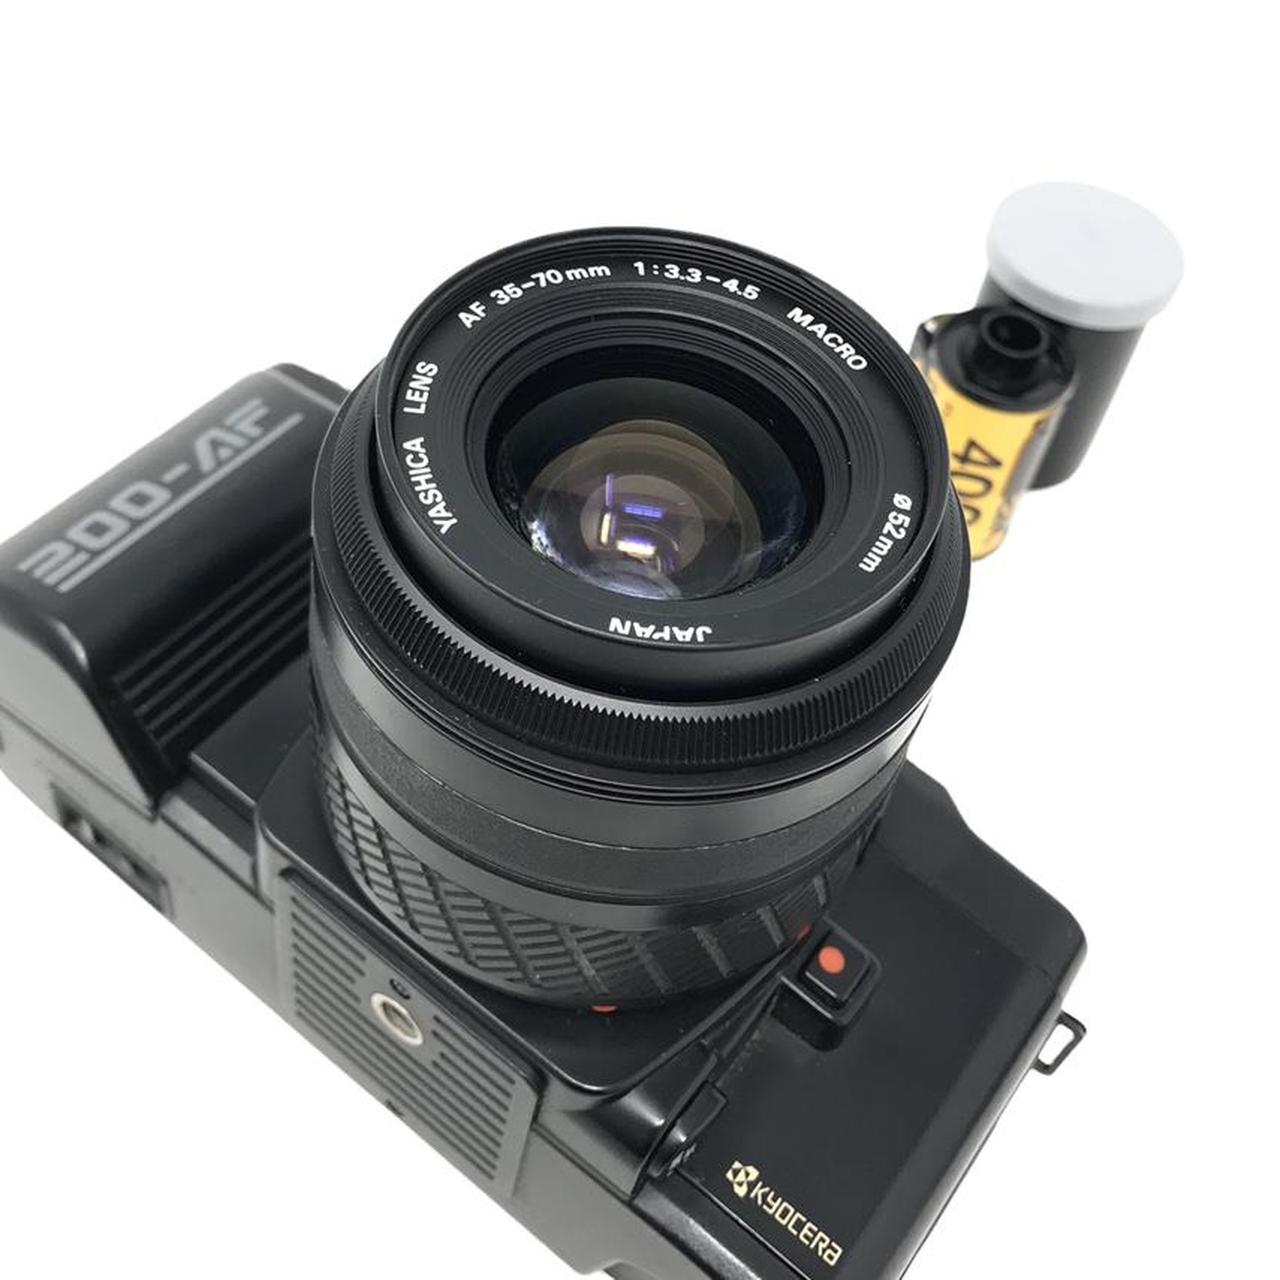 Product Image 4 - Yashica 200-AF 35mm Film Camera

Comes